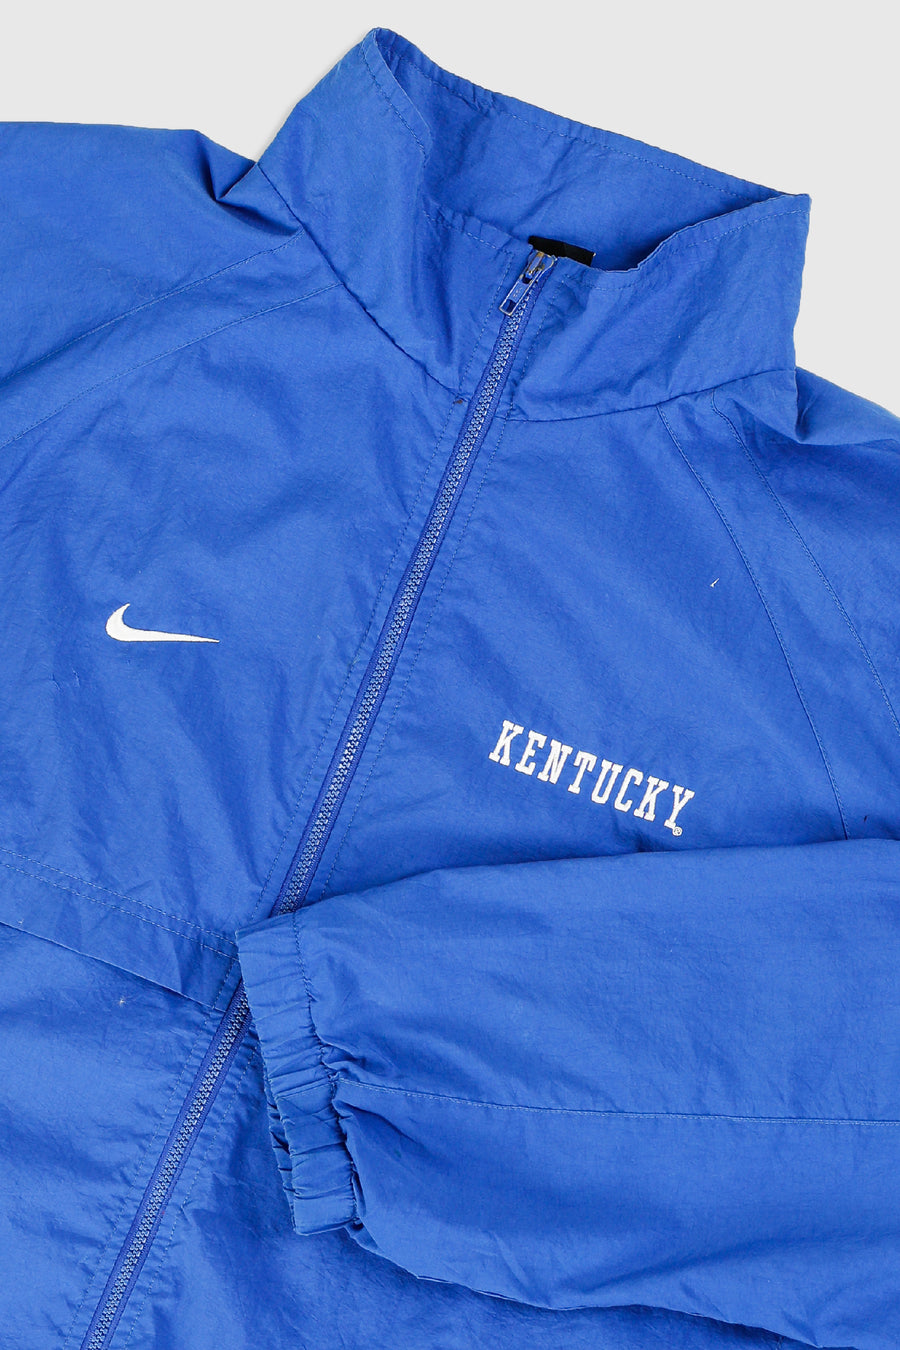 Vintage Nike Kentucky Jacket - XXXL